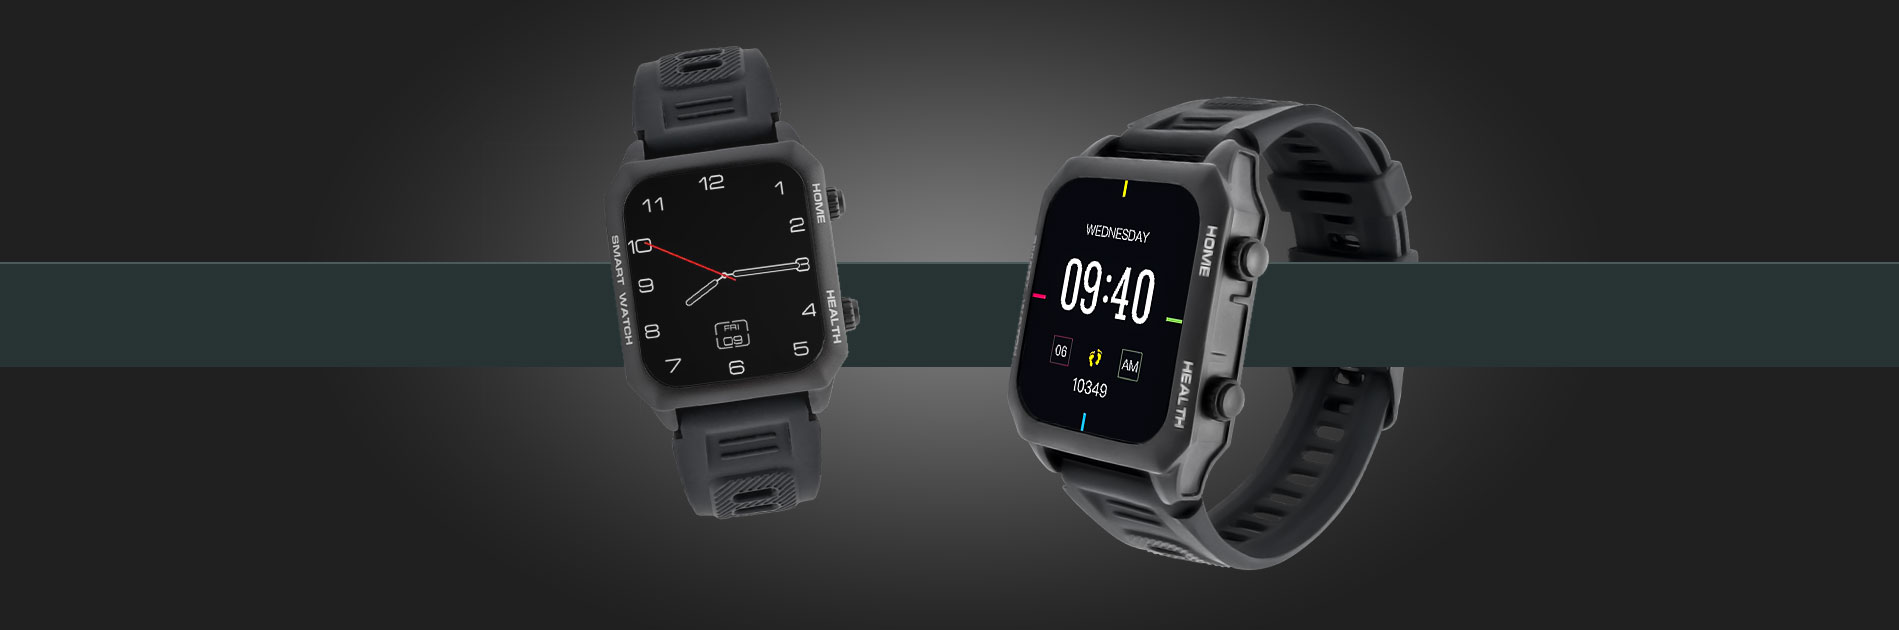 smartwatch z pomiarem ciśnienia i ekg watchmark kardiowatch